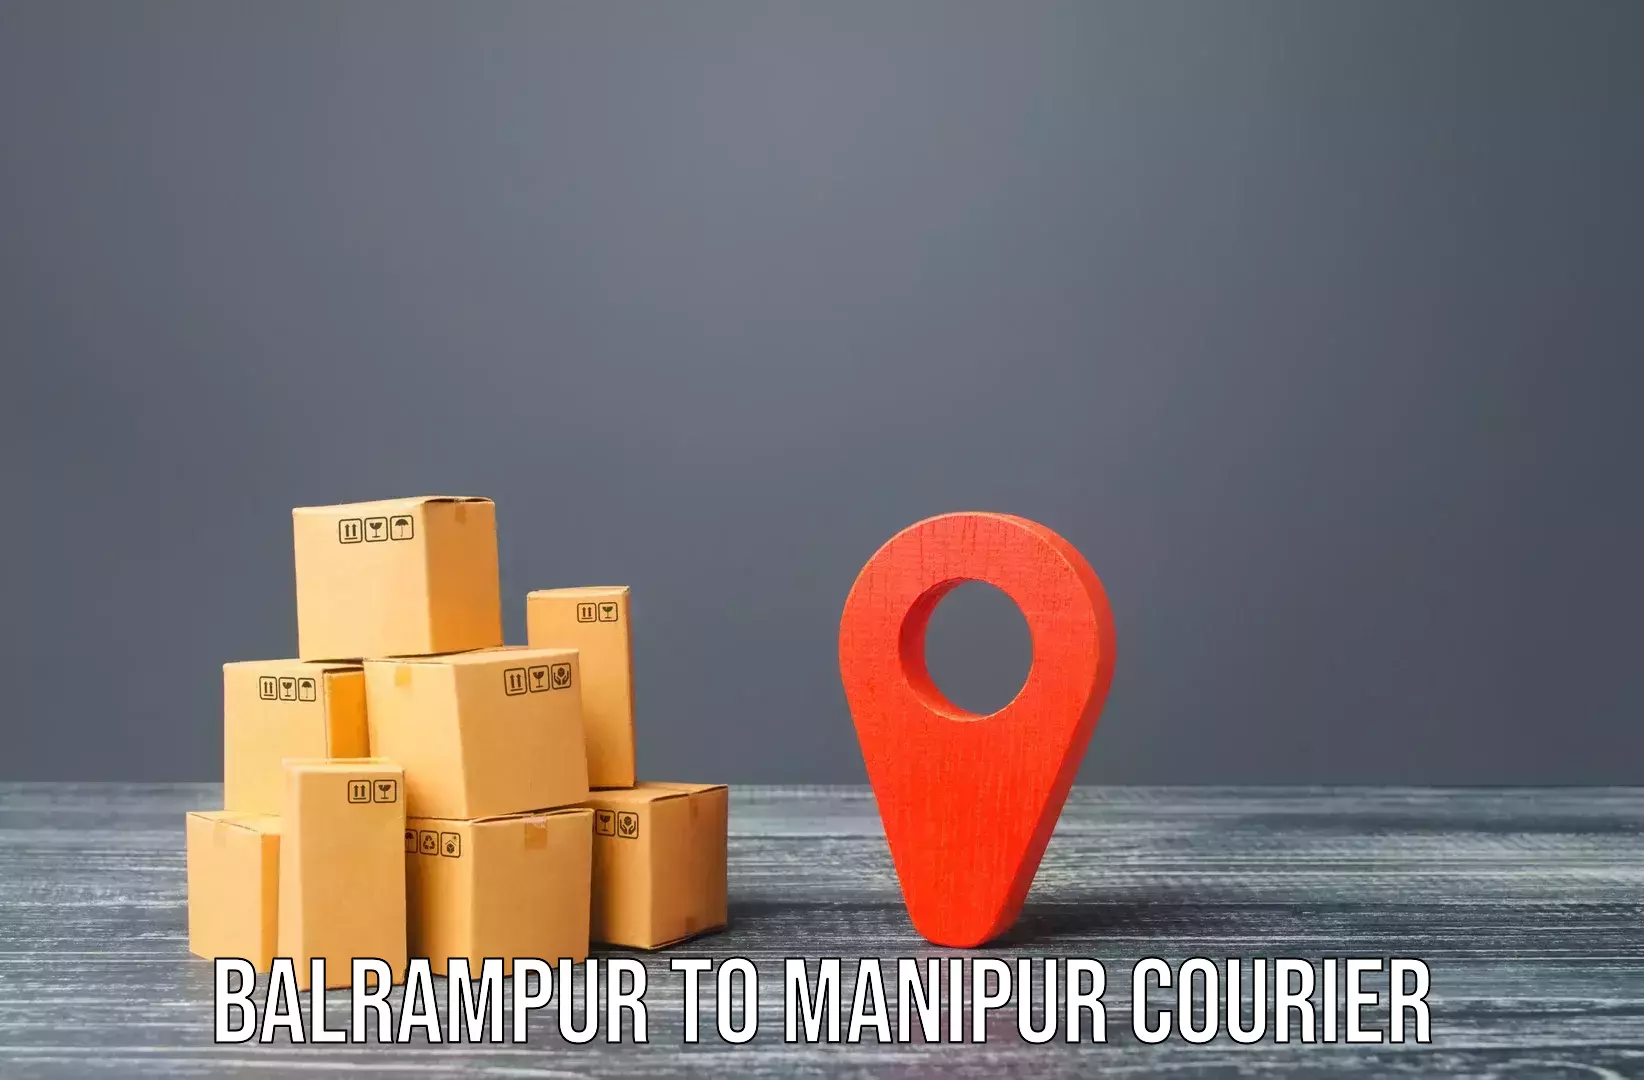 Furniture moving plans Balrampur to Moirang